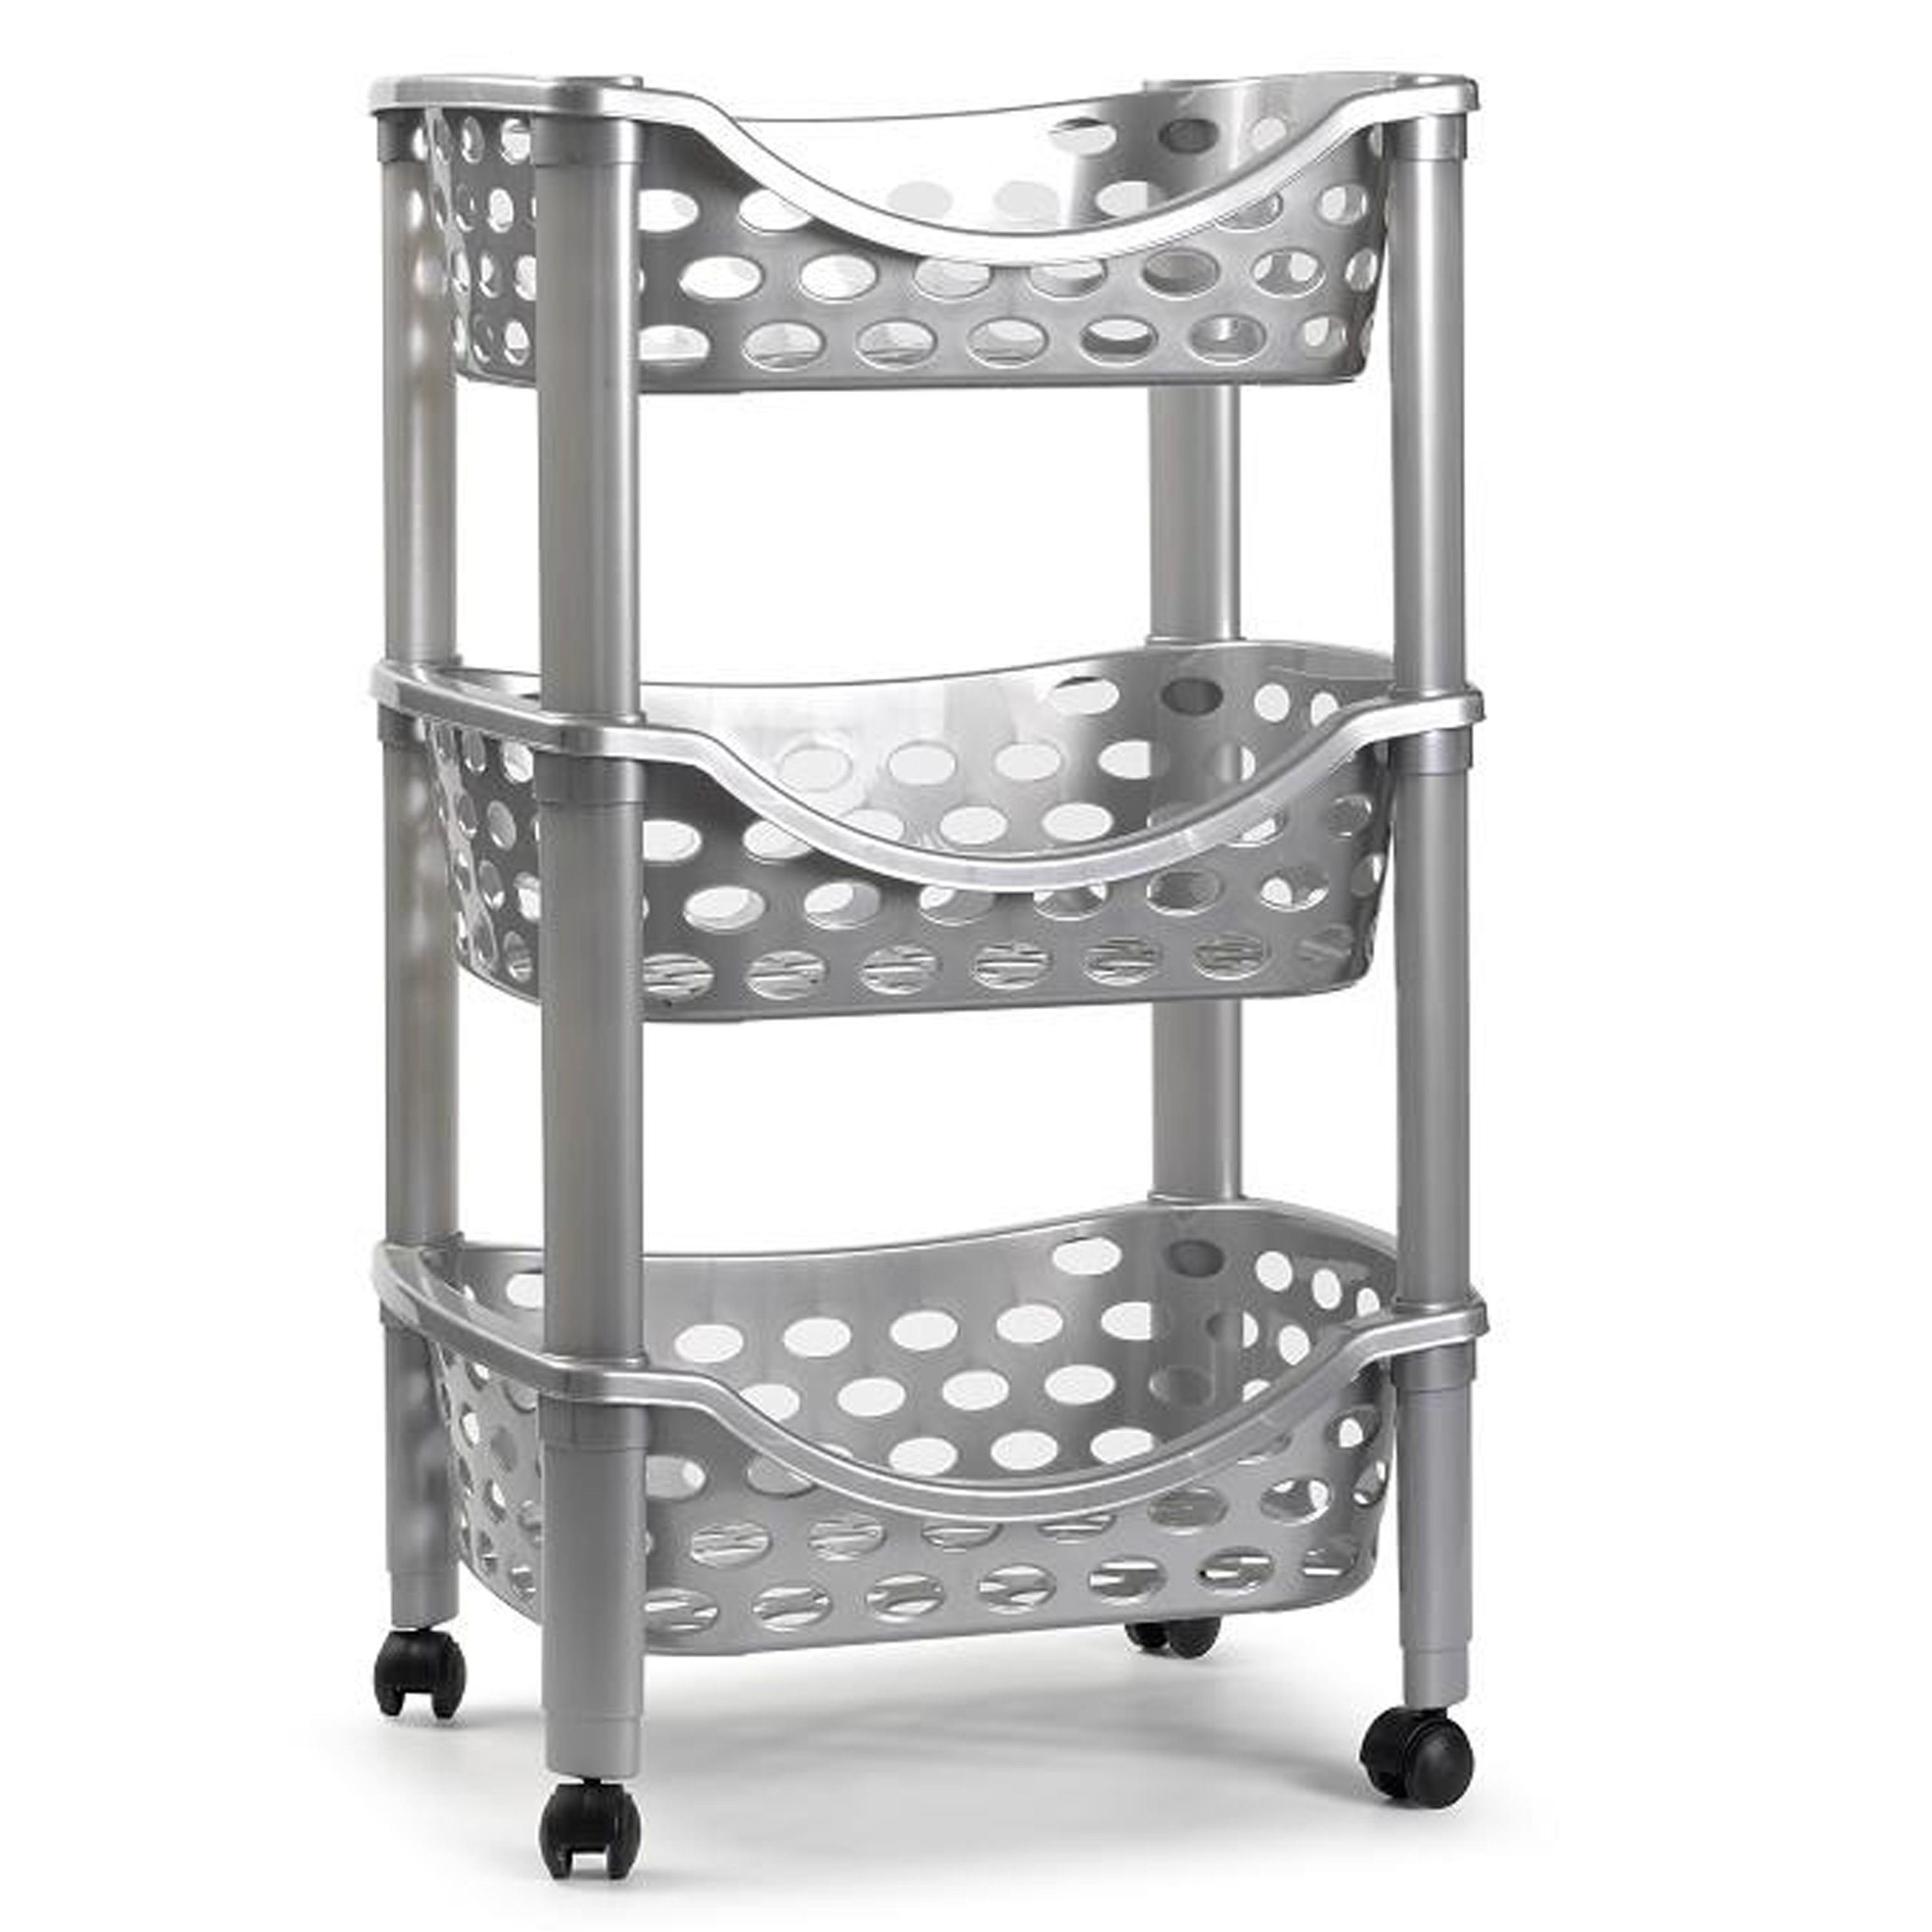 Keukentrolley-roltafel 3 laags kunststof zilver 40 x 65 cm